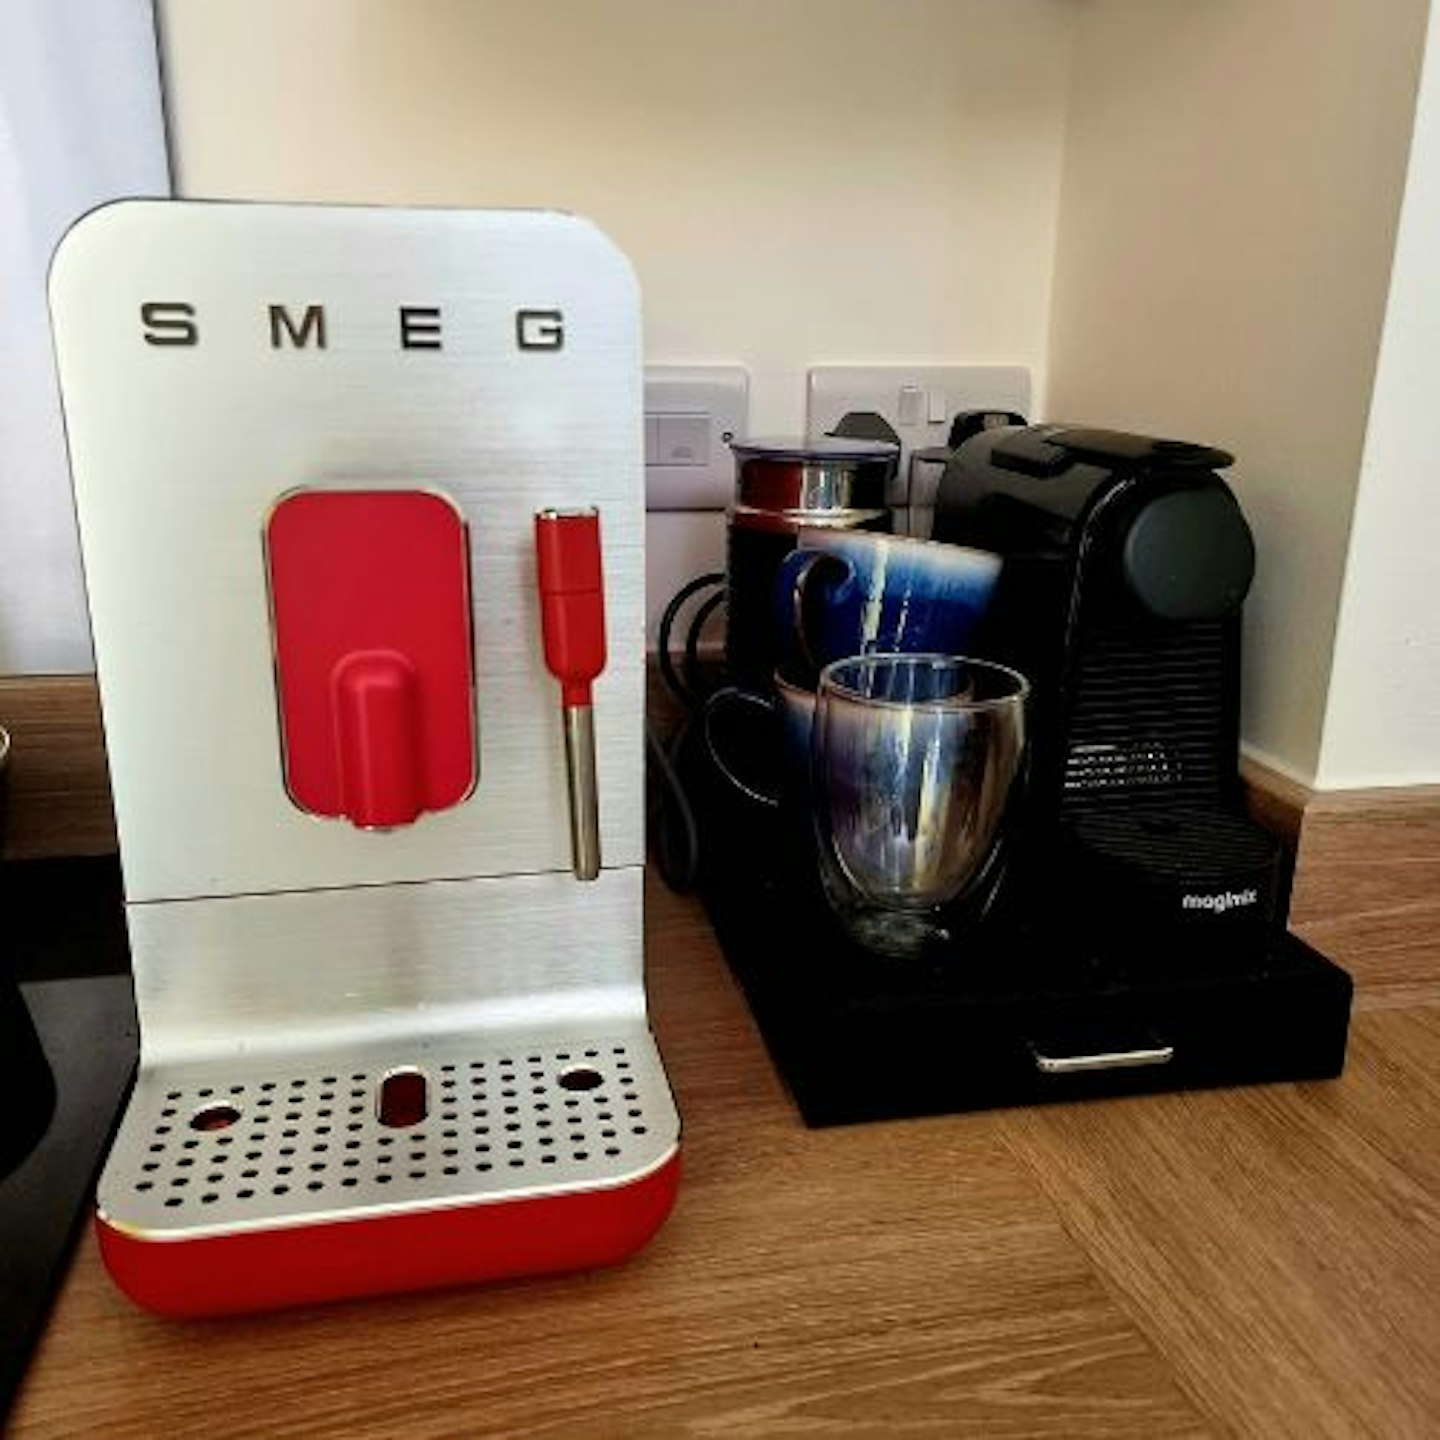 Smeg-coffee-machine-comparison